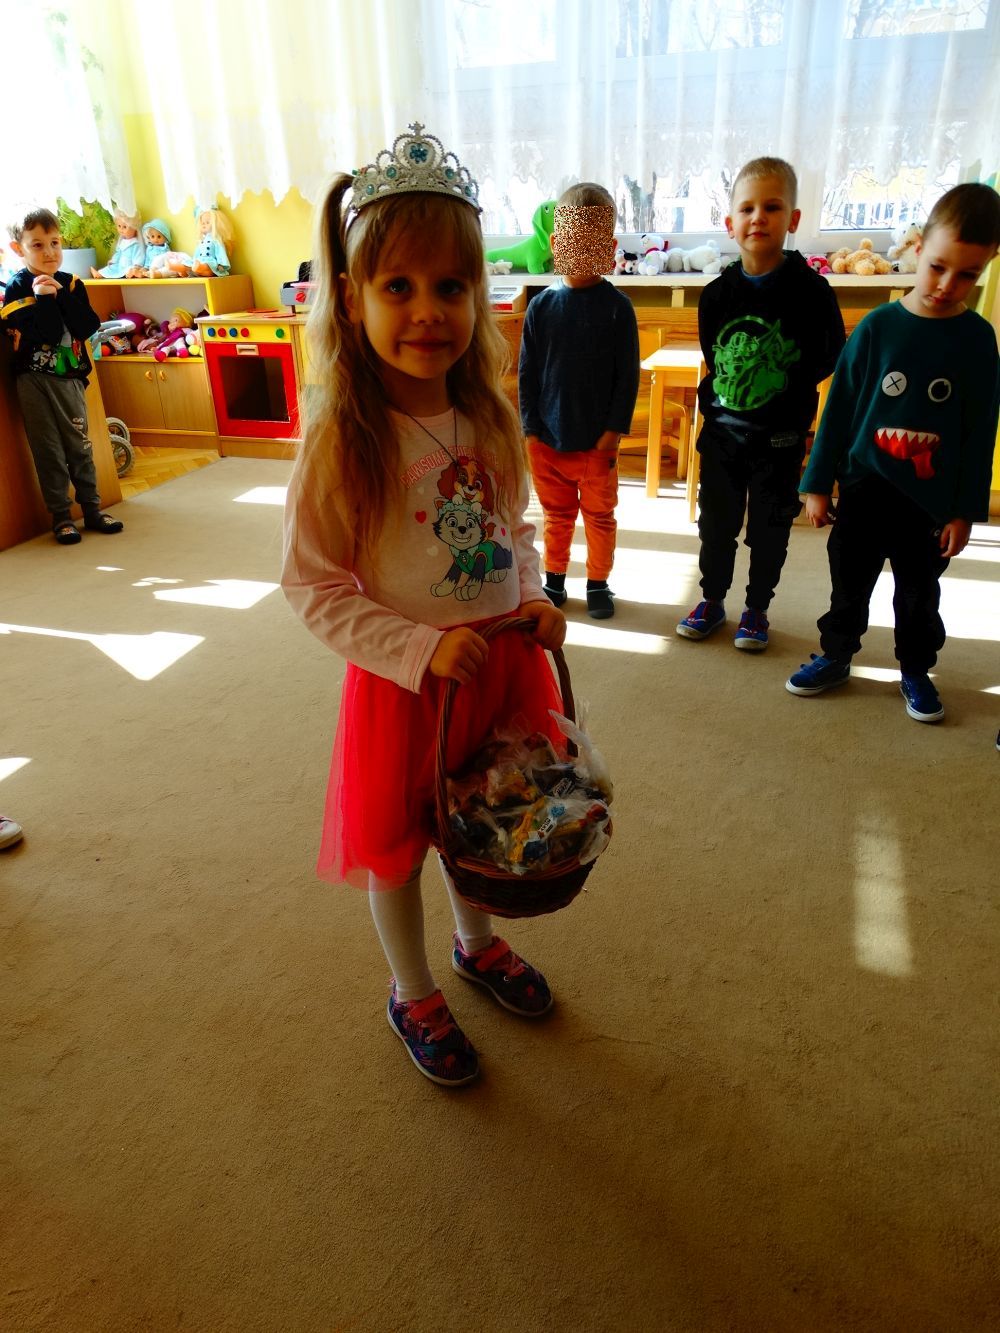 Dziewczynka z diademem na głowie stoi na środku sali i w koszyczku ma cukierki dla dzieci. Z tyłu stoją chłopcy